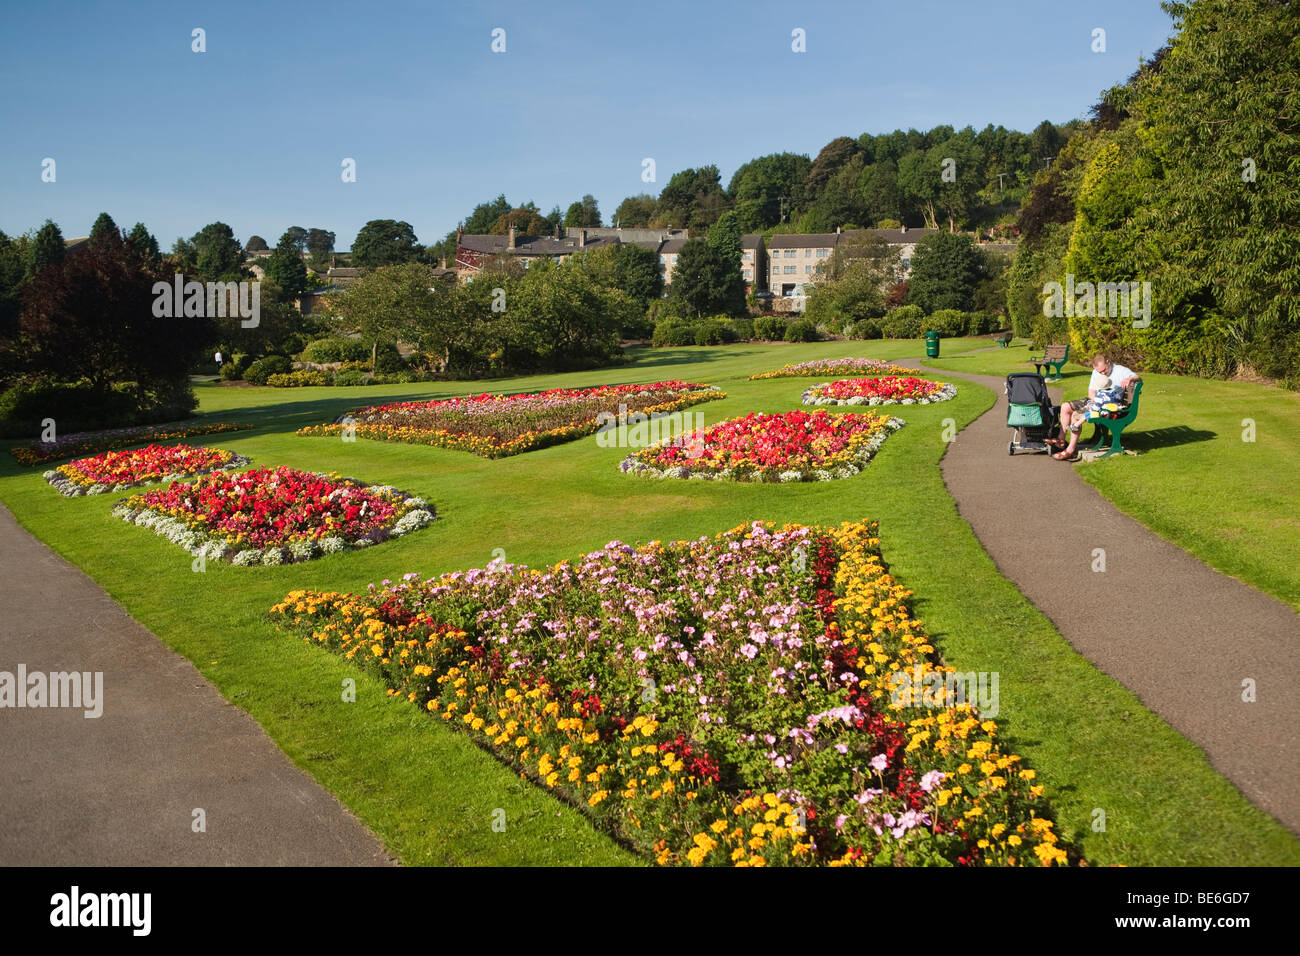 Regno Unito, Inghilterra, Yorkshire, Haworth, parco pubblico, padre e figlio giovane godendo del sole Foto Stock